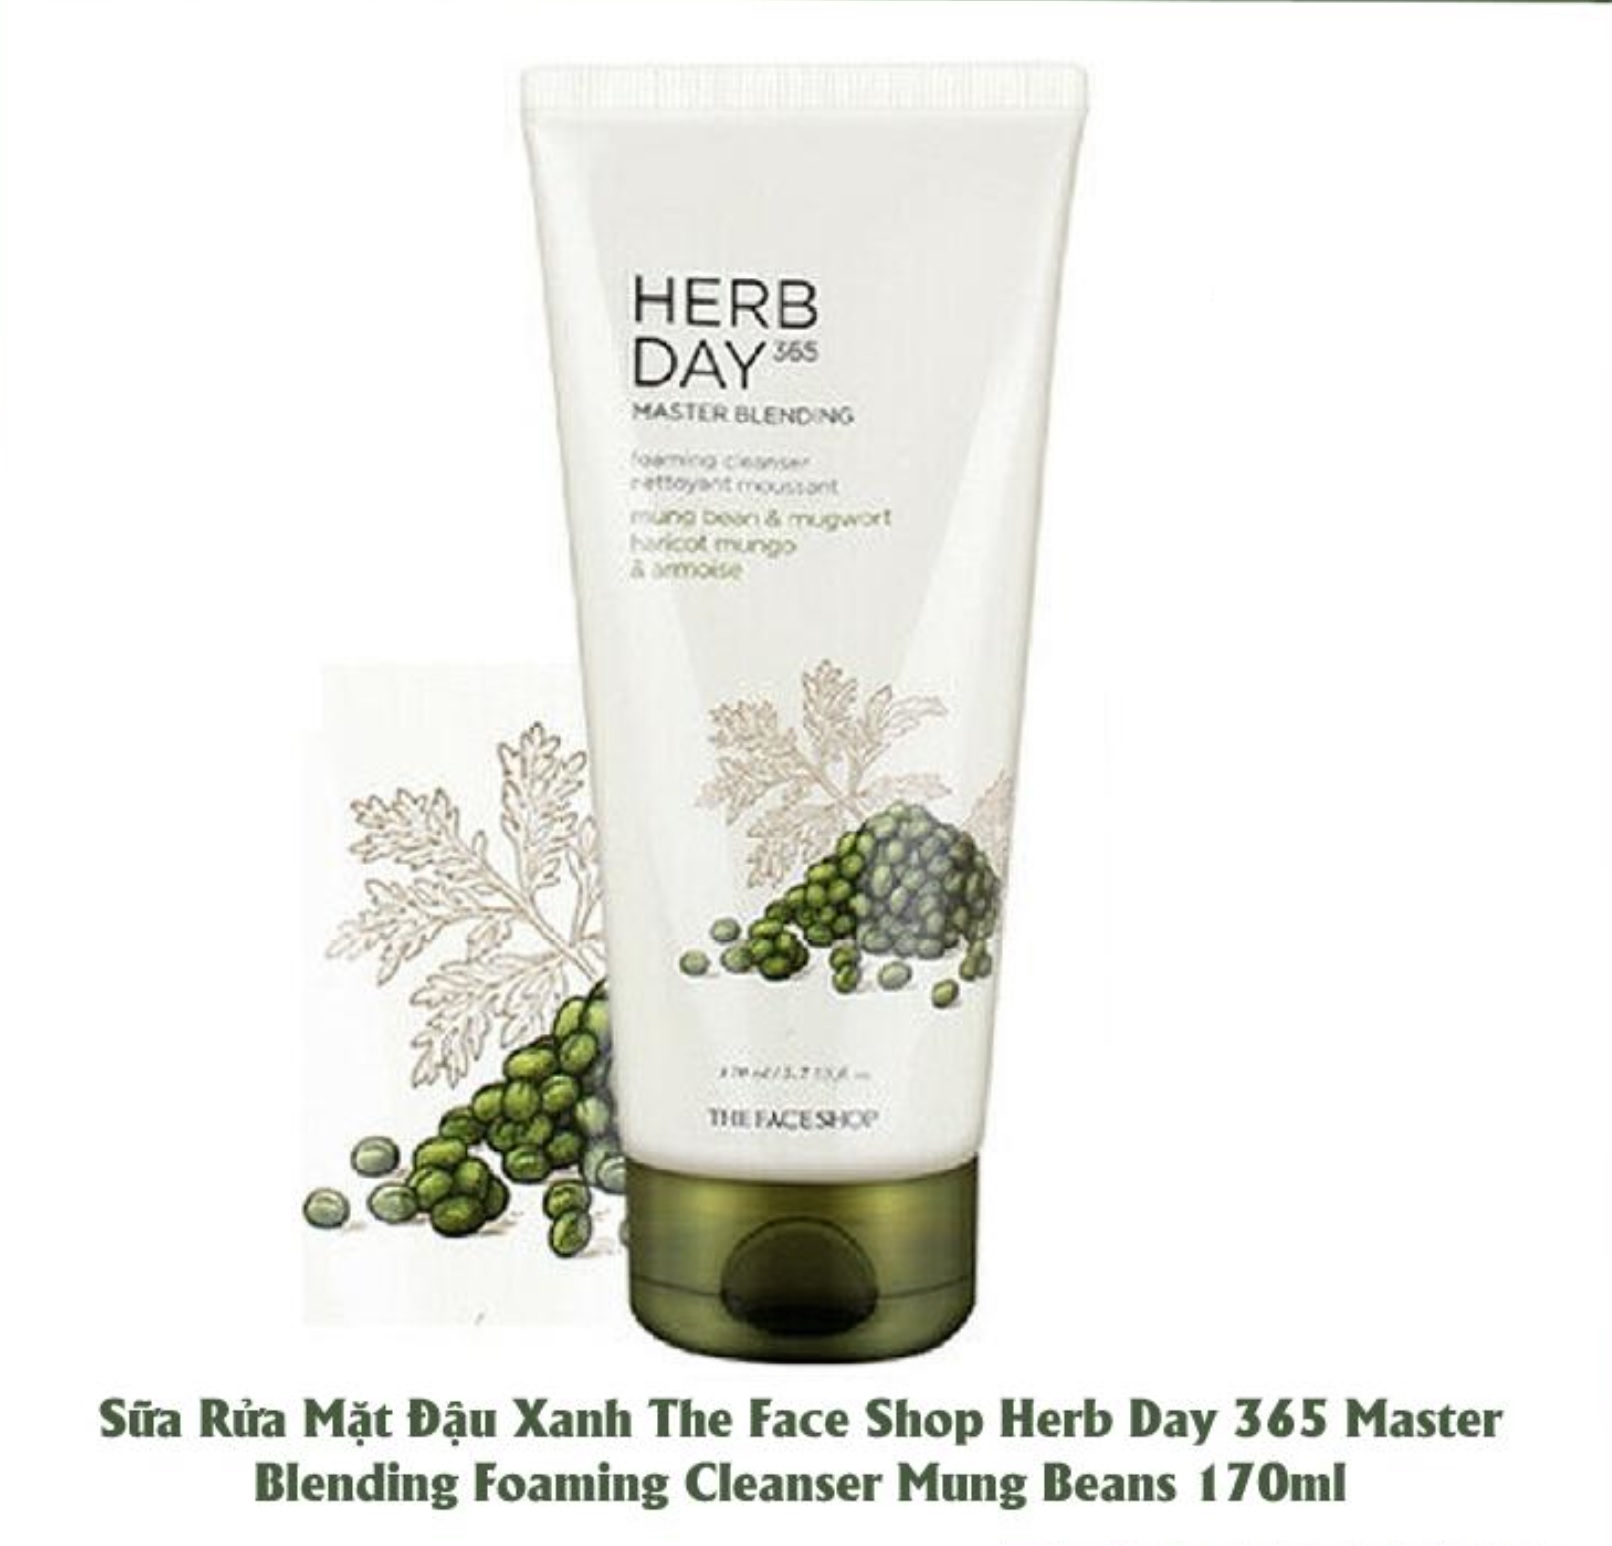 Sữa Rửa Mặt Đậu Xanh Ngải Cứu Herb Day 365 Master Blending Foaming Cleanser 170ml (the face shop)